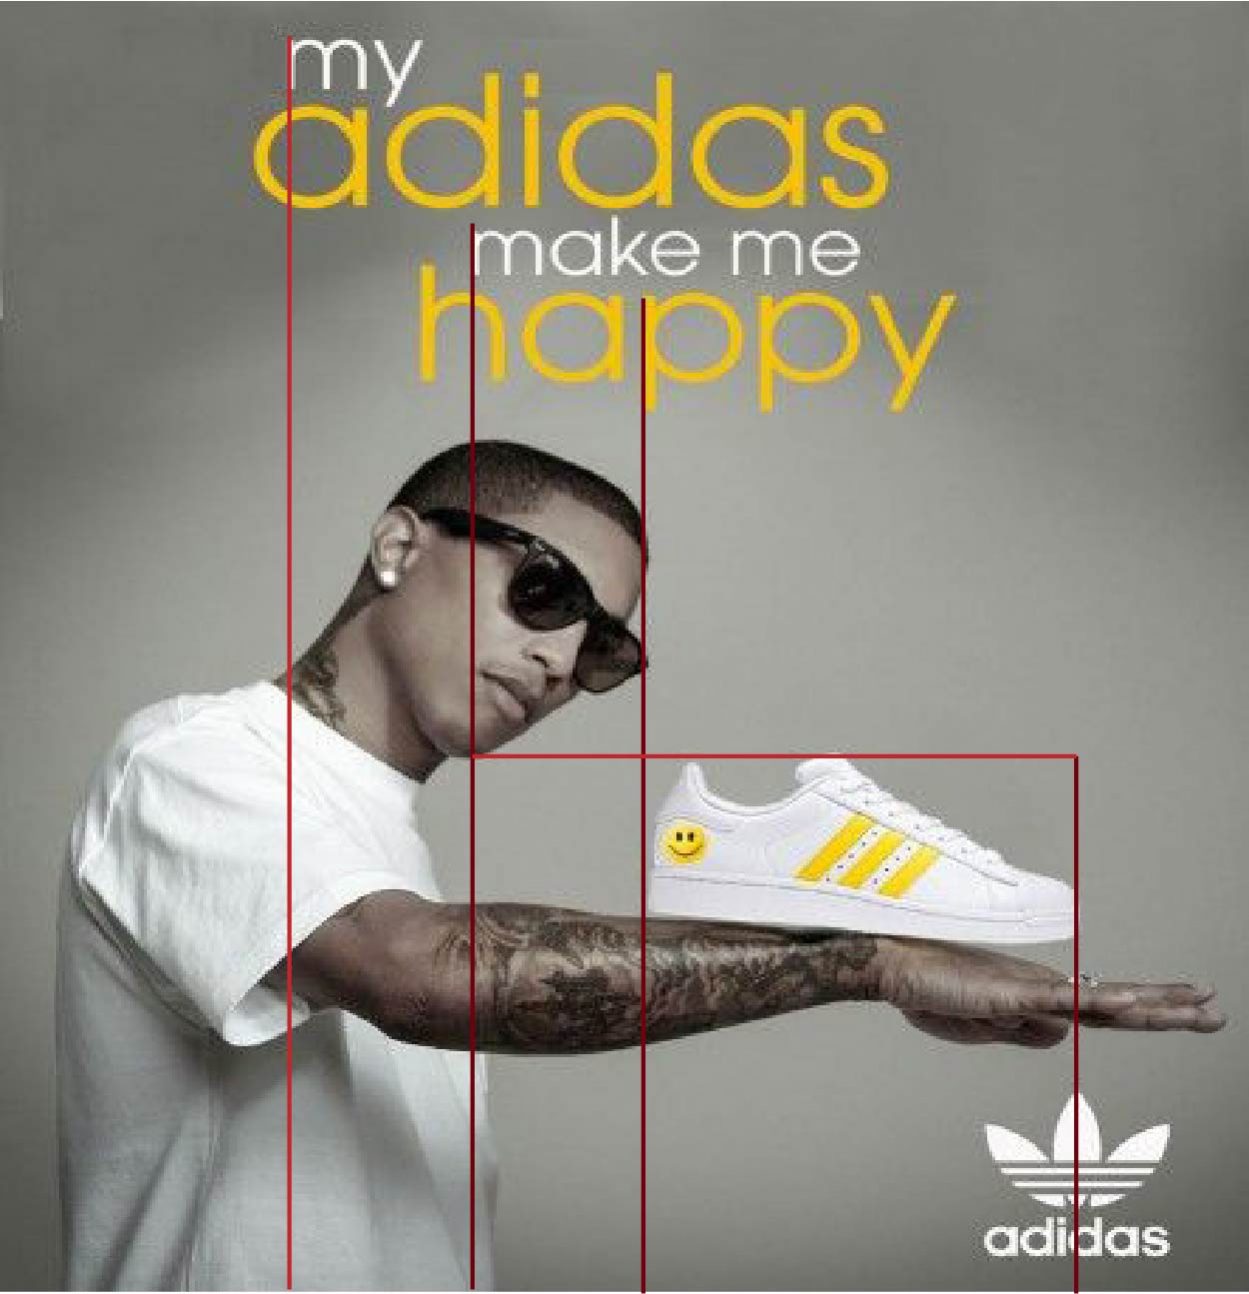 who makes adidas